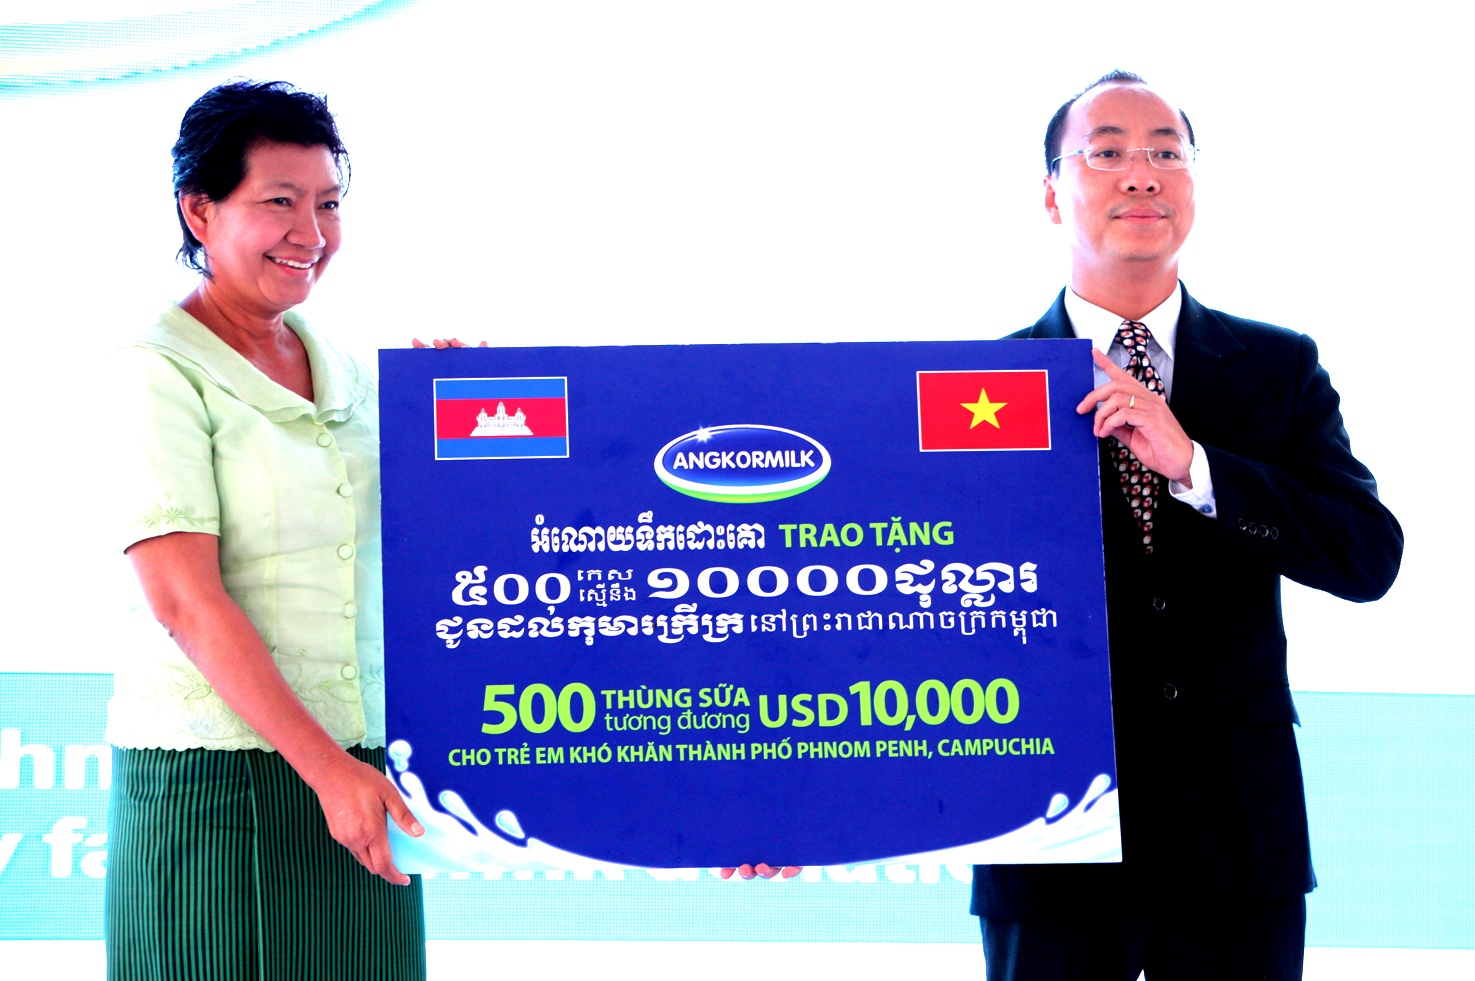 Tại chương trình, Ông Đoàn Quốc Khánh – Tổng Giám đốc Nhà máy Sữa Angkor đại diện Nhà máy đã gửi đến cho trẻ em nghèo của Phnom Penh 500 thùng sữa nước trị giá tương đương 10.000 USD để góp phần cải thiện tình trạng dinh dưỡng cho trẻ em Campuchia